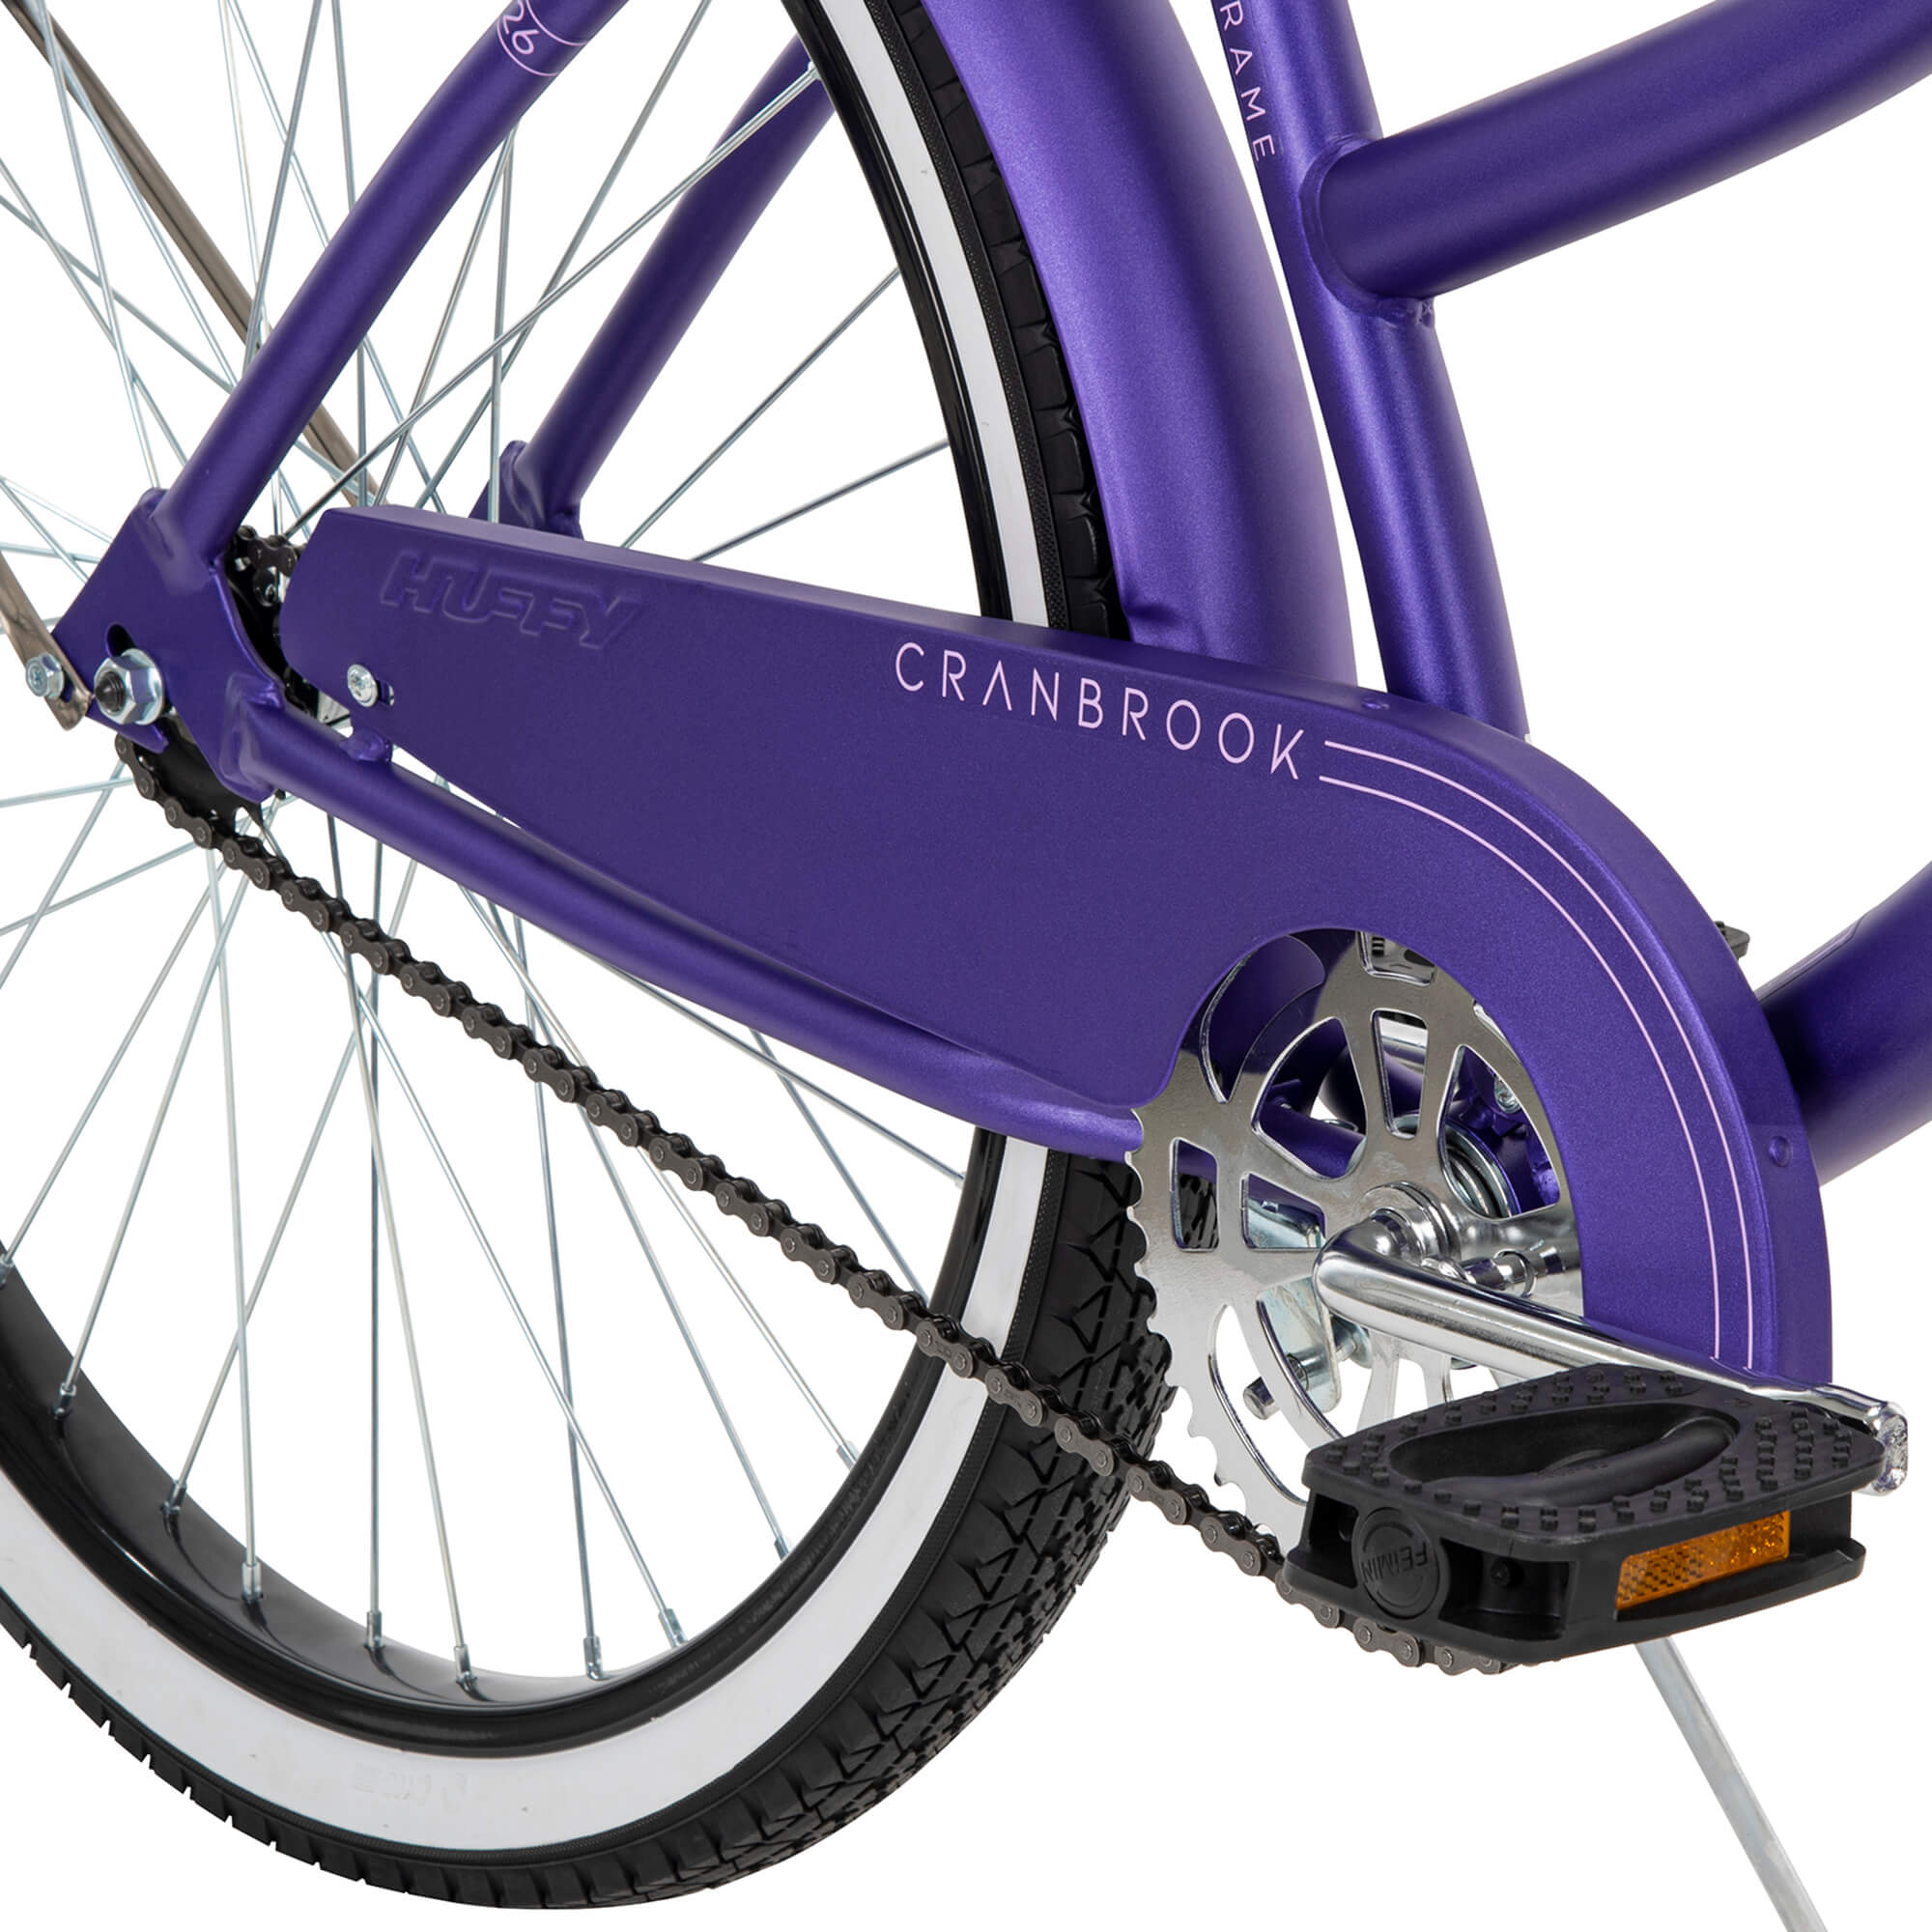 Huffy 26" Cranbrook Women's Beach Cruiser Bike, Purple - image 4 of 8